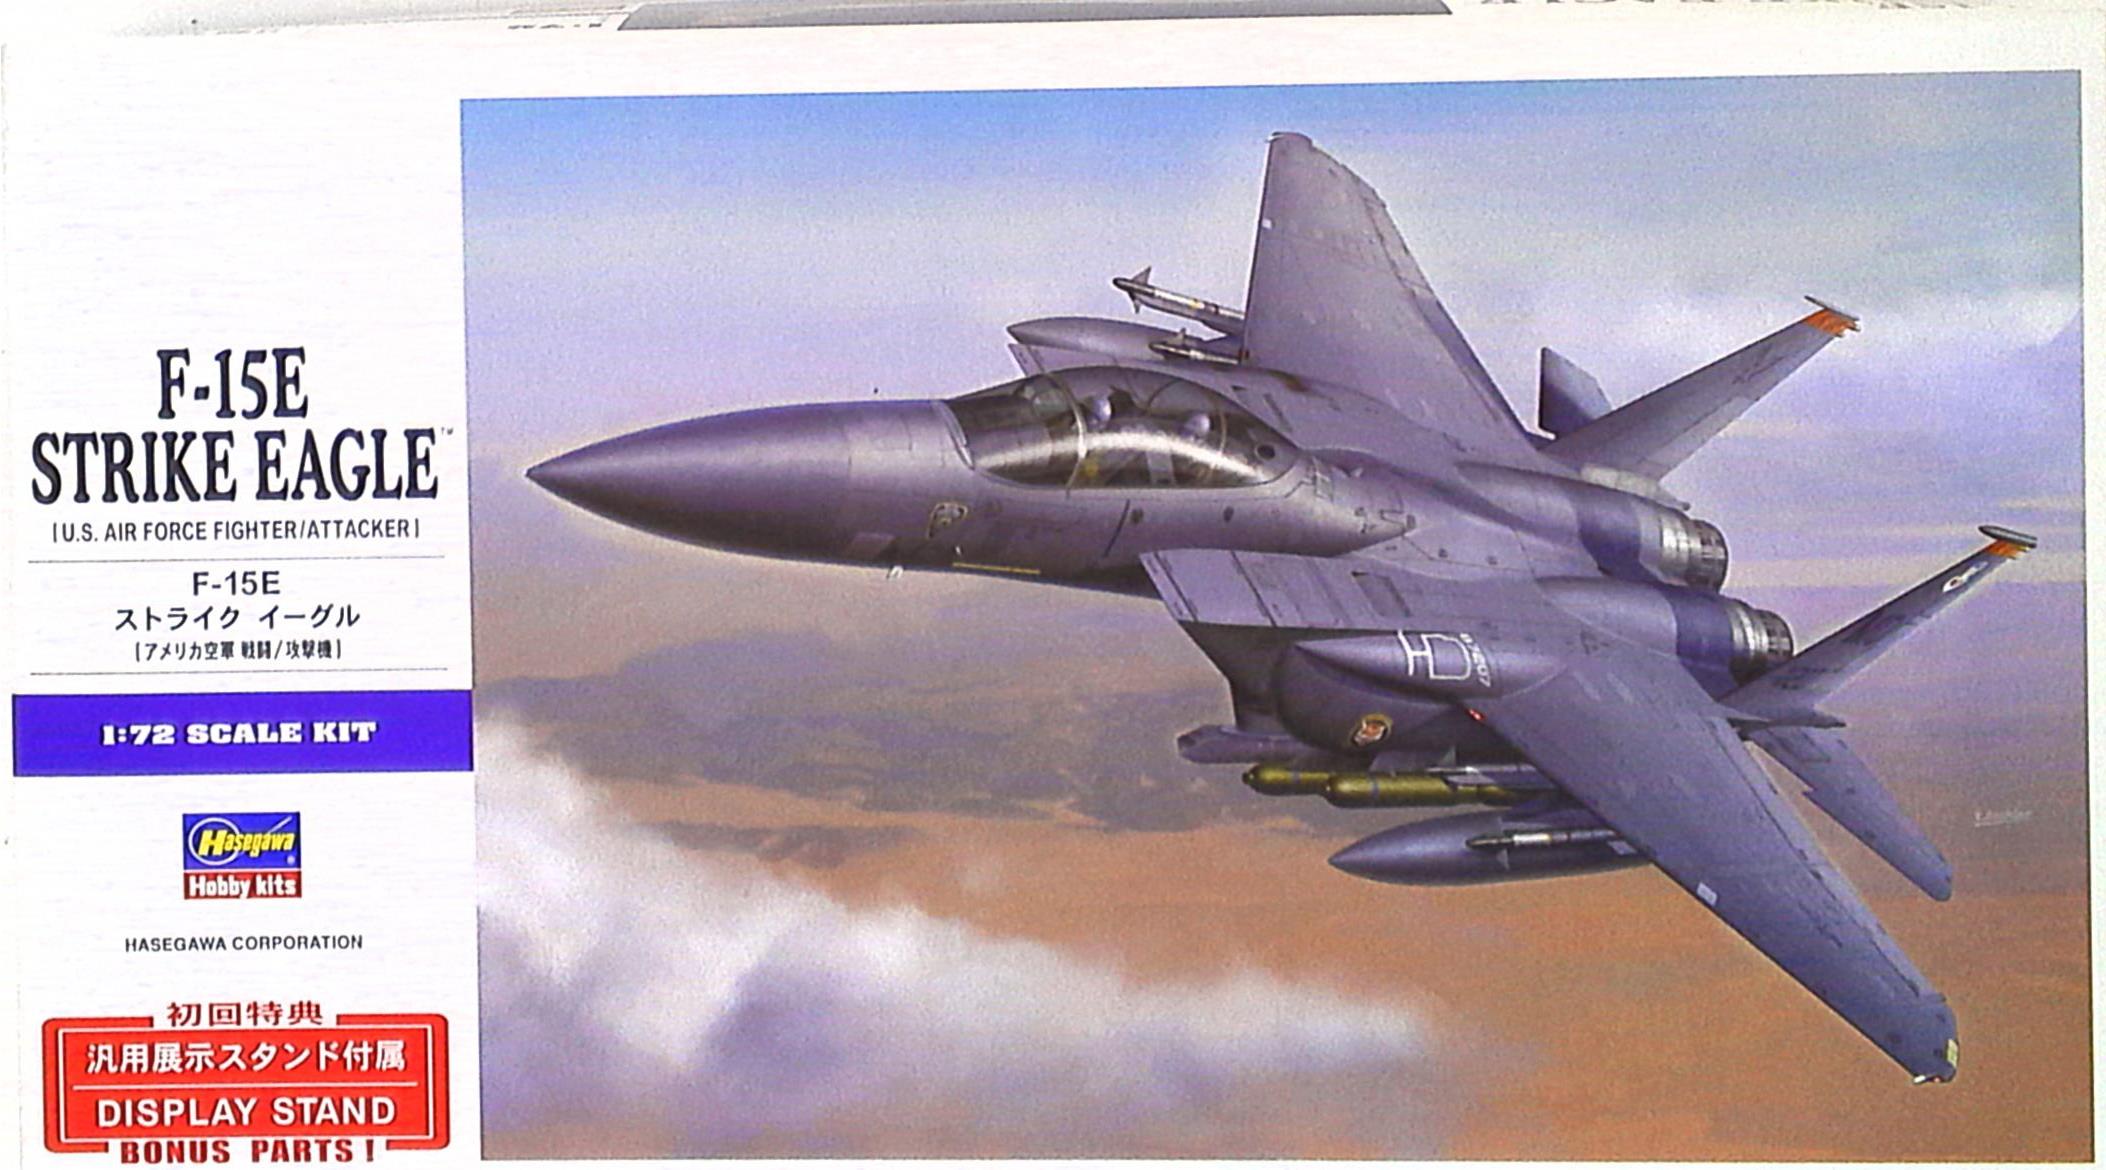 定番お買い得F-15E STRIKE EAGLE ストライクイーグル 戦闘爆撃機 レベル Revell 未組立 プラモデル 20210410 tkhshss h 0403 アメリカ